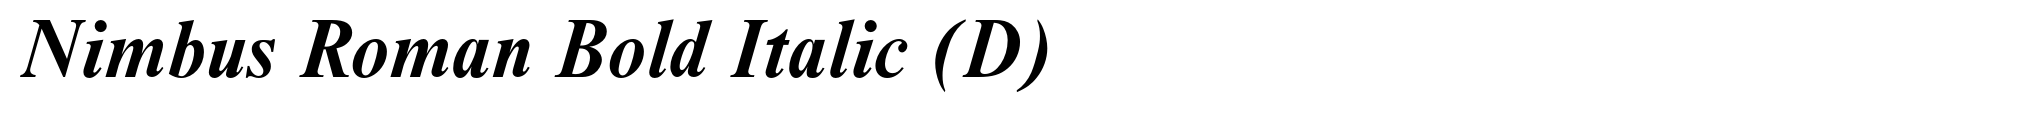 Nimbus Roman Bold Italic (D) image